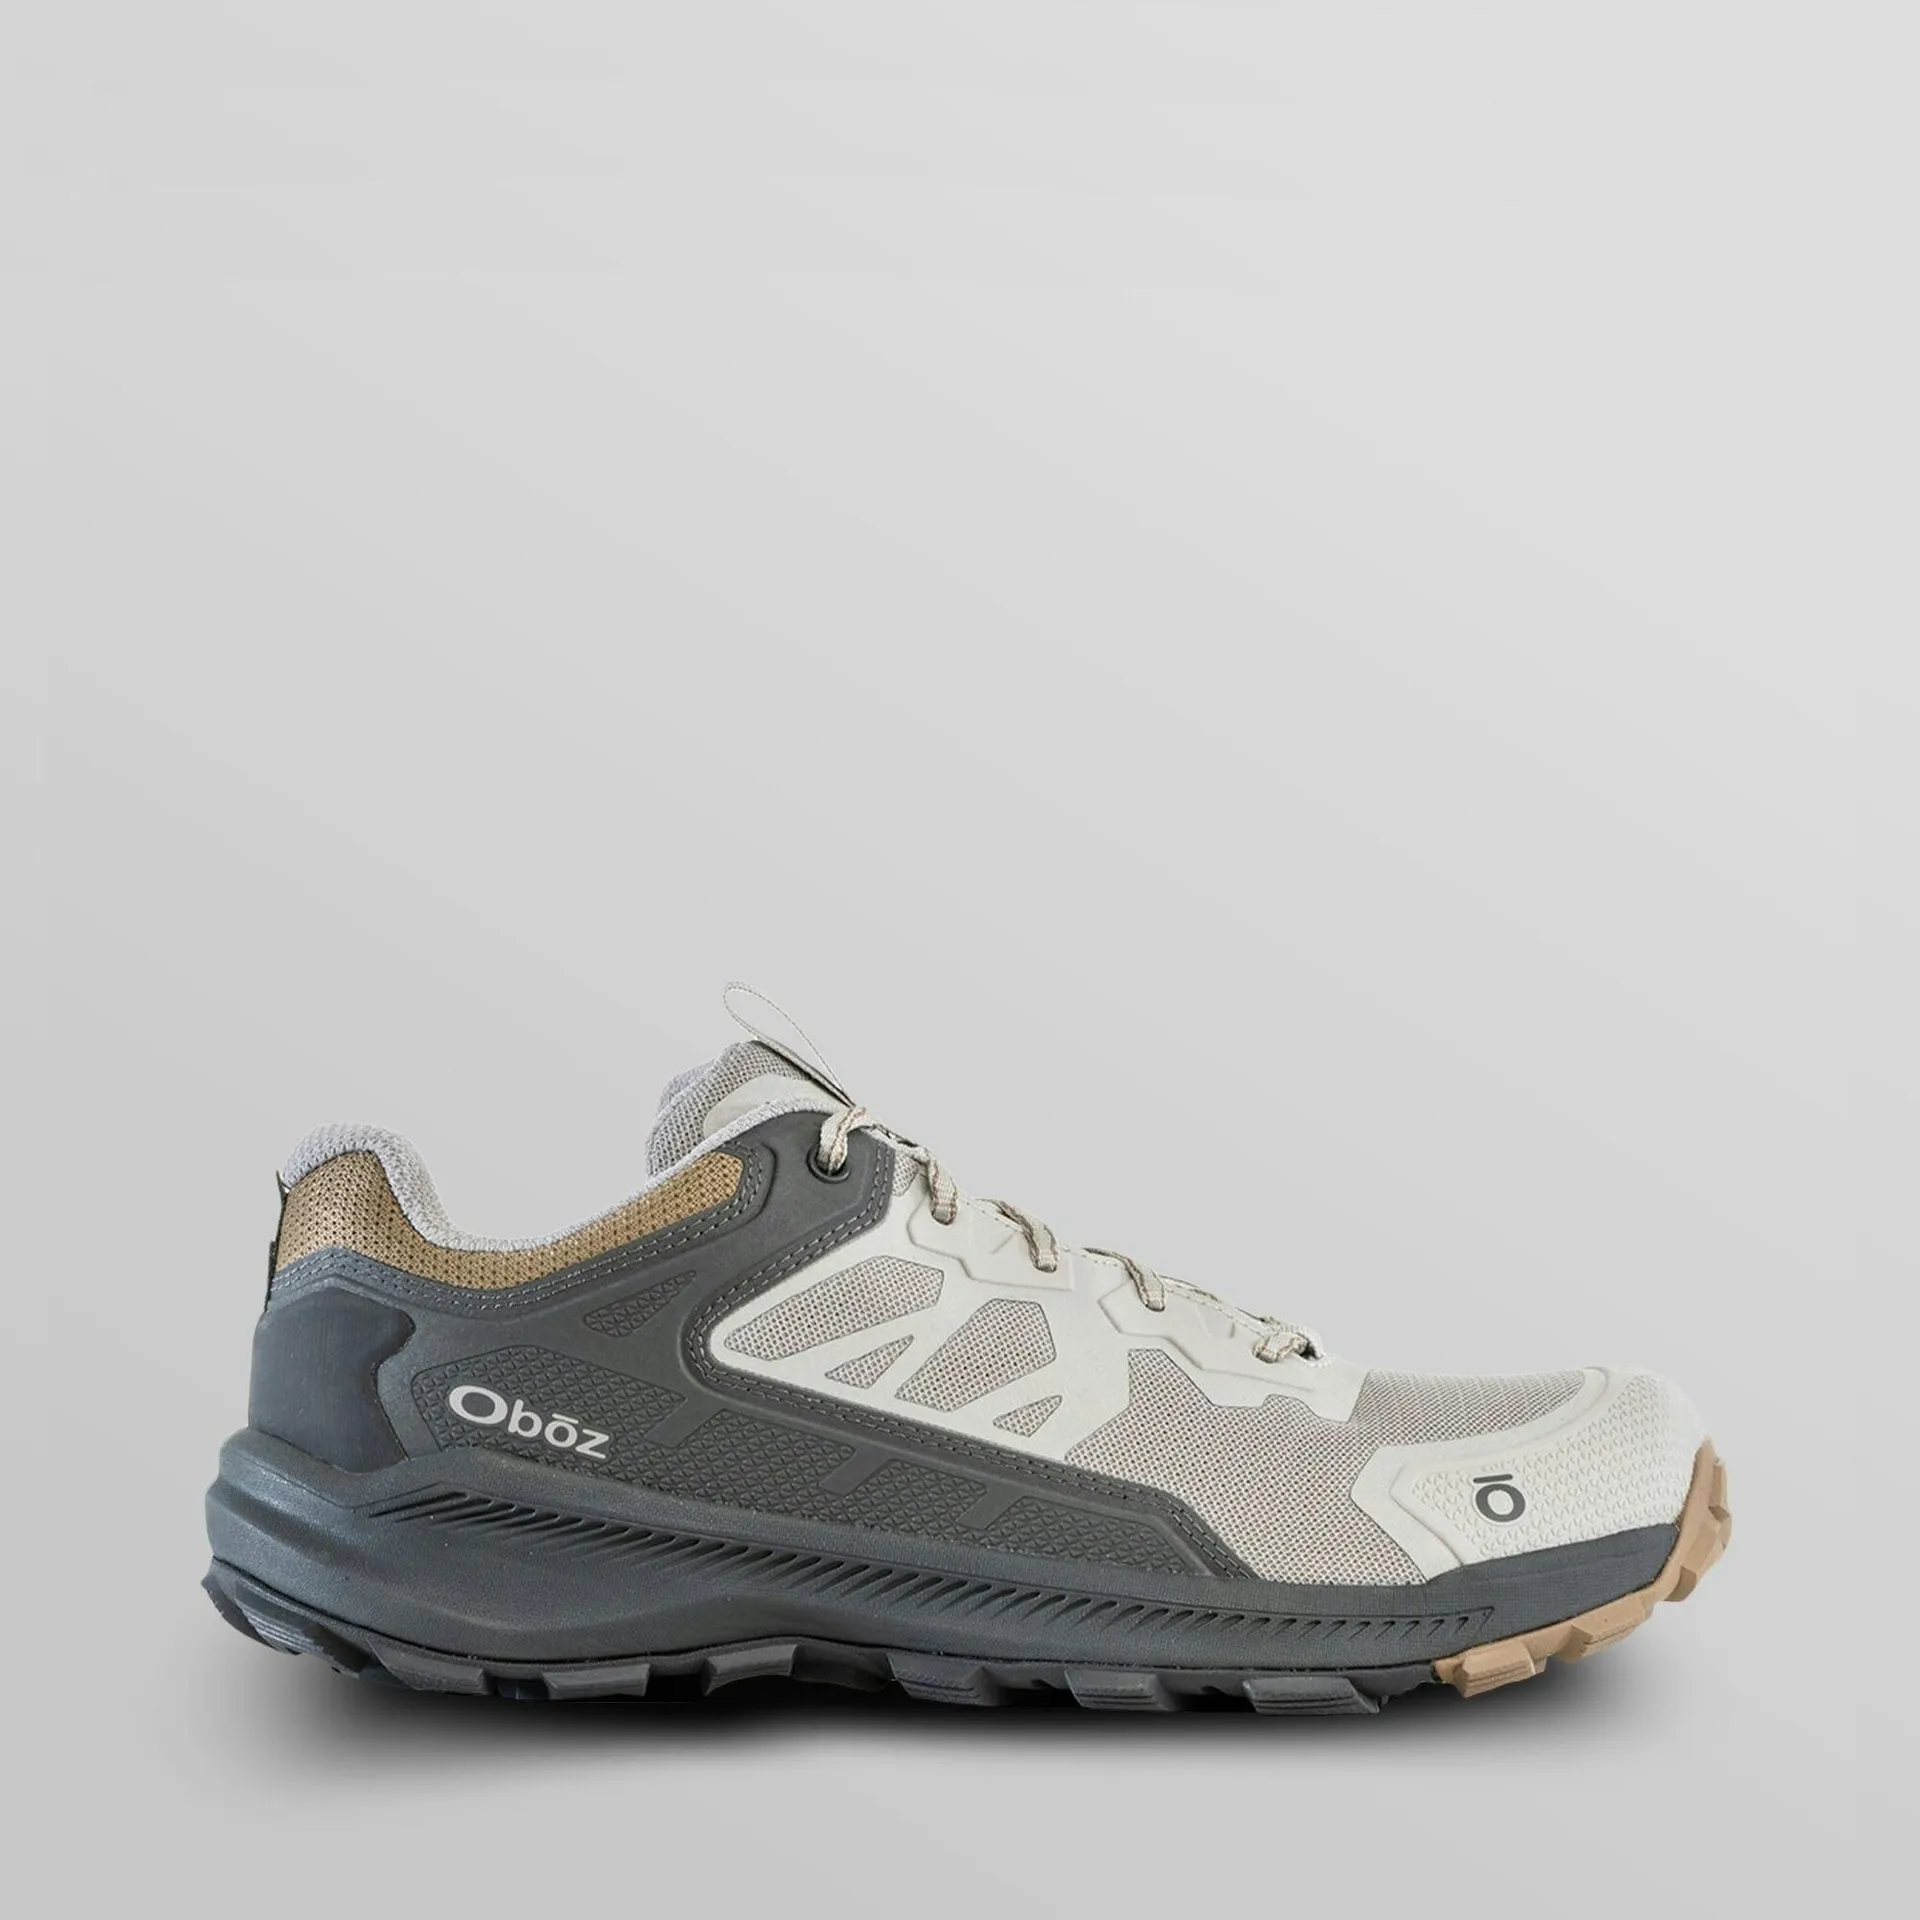 Oboz Katabatic Men’s Low Hiking Shoes